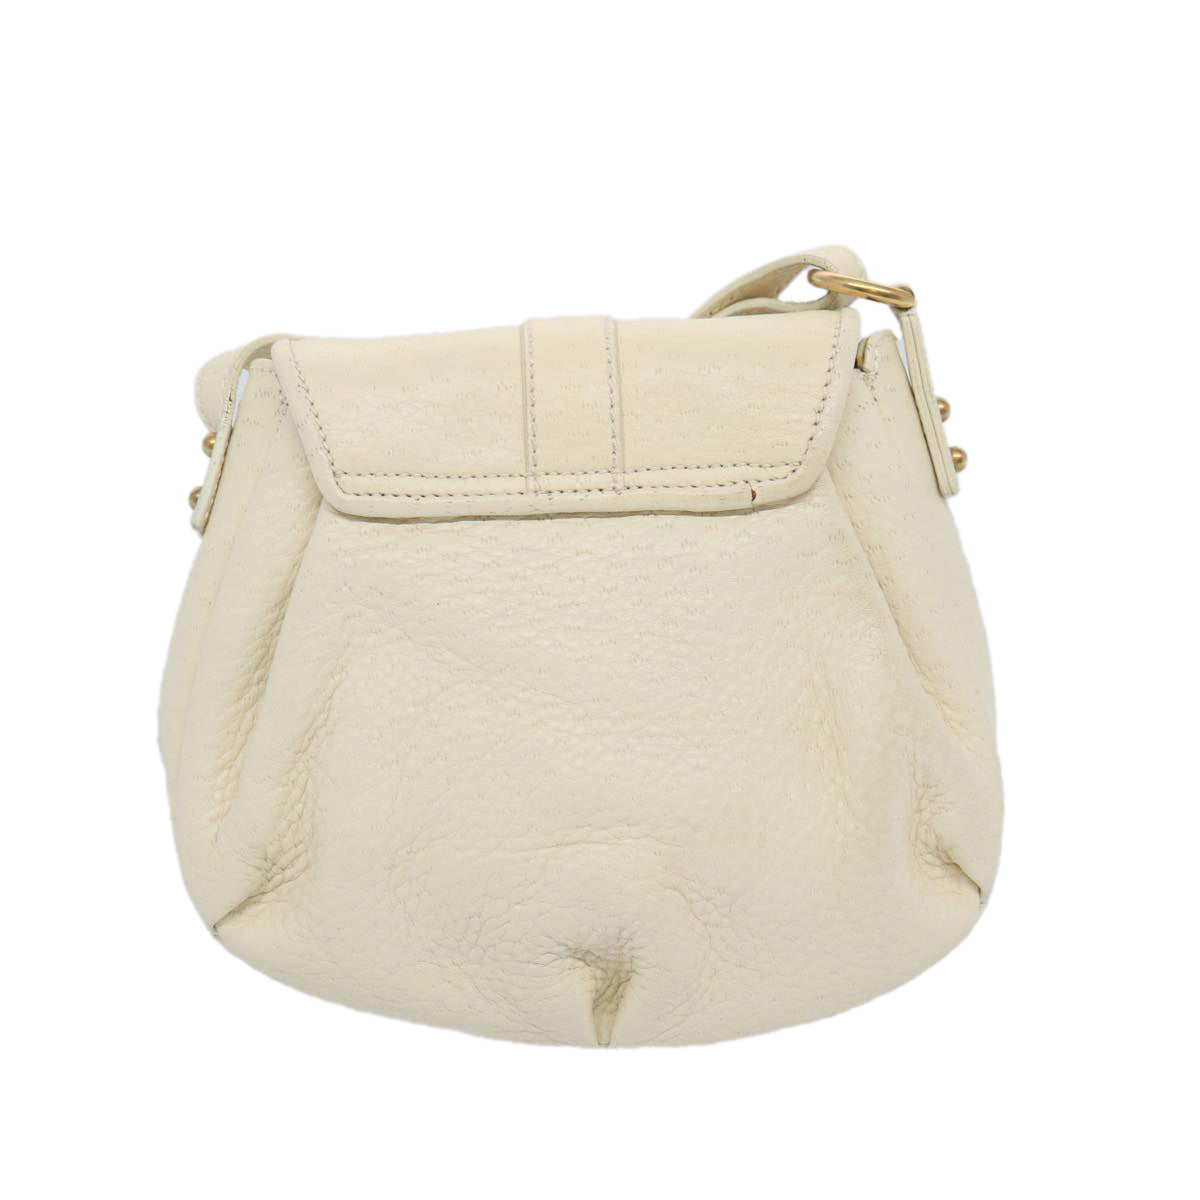 Salvatore Ferragamo Shoulder Bag Leather Cream Auth 65974 - 0